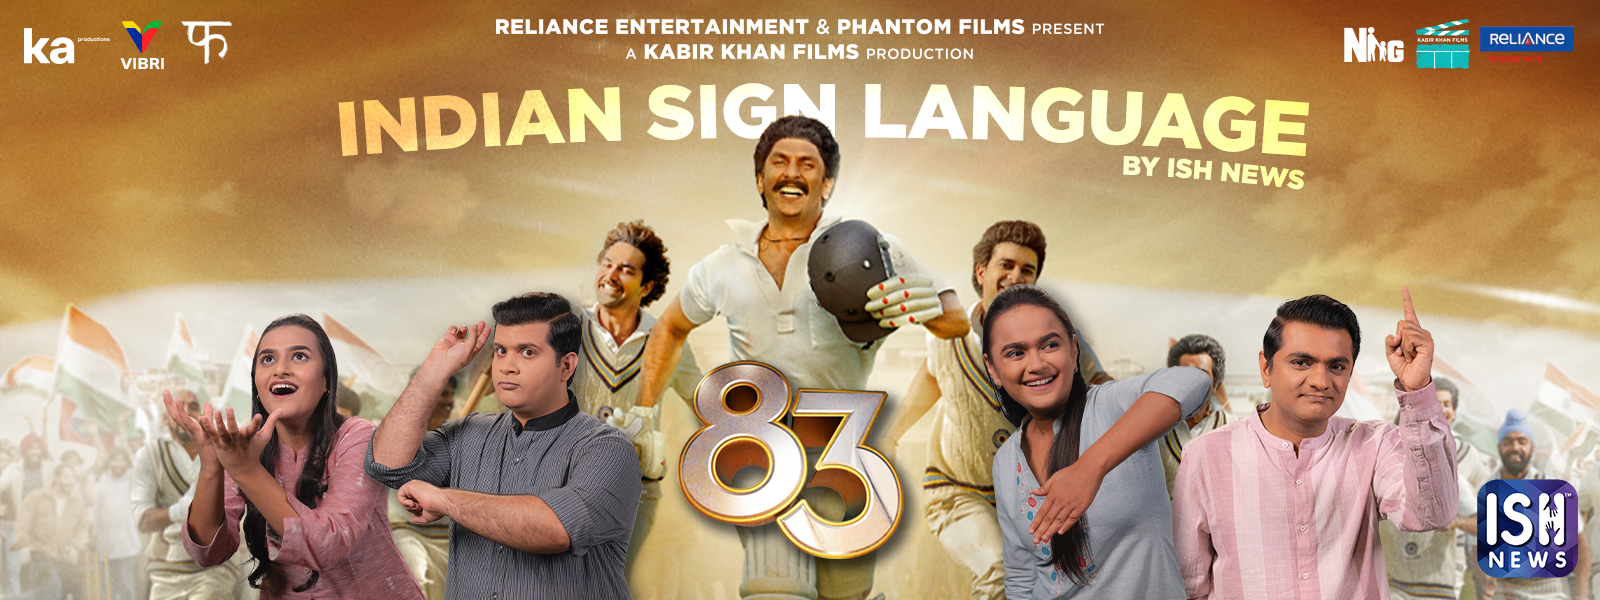 83 Movie - Banner